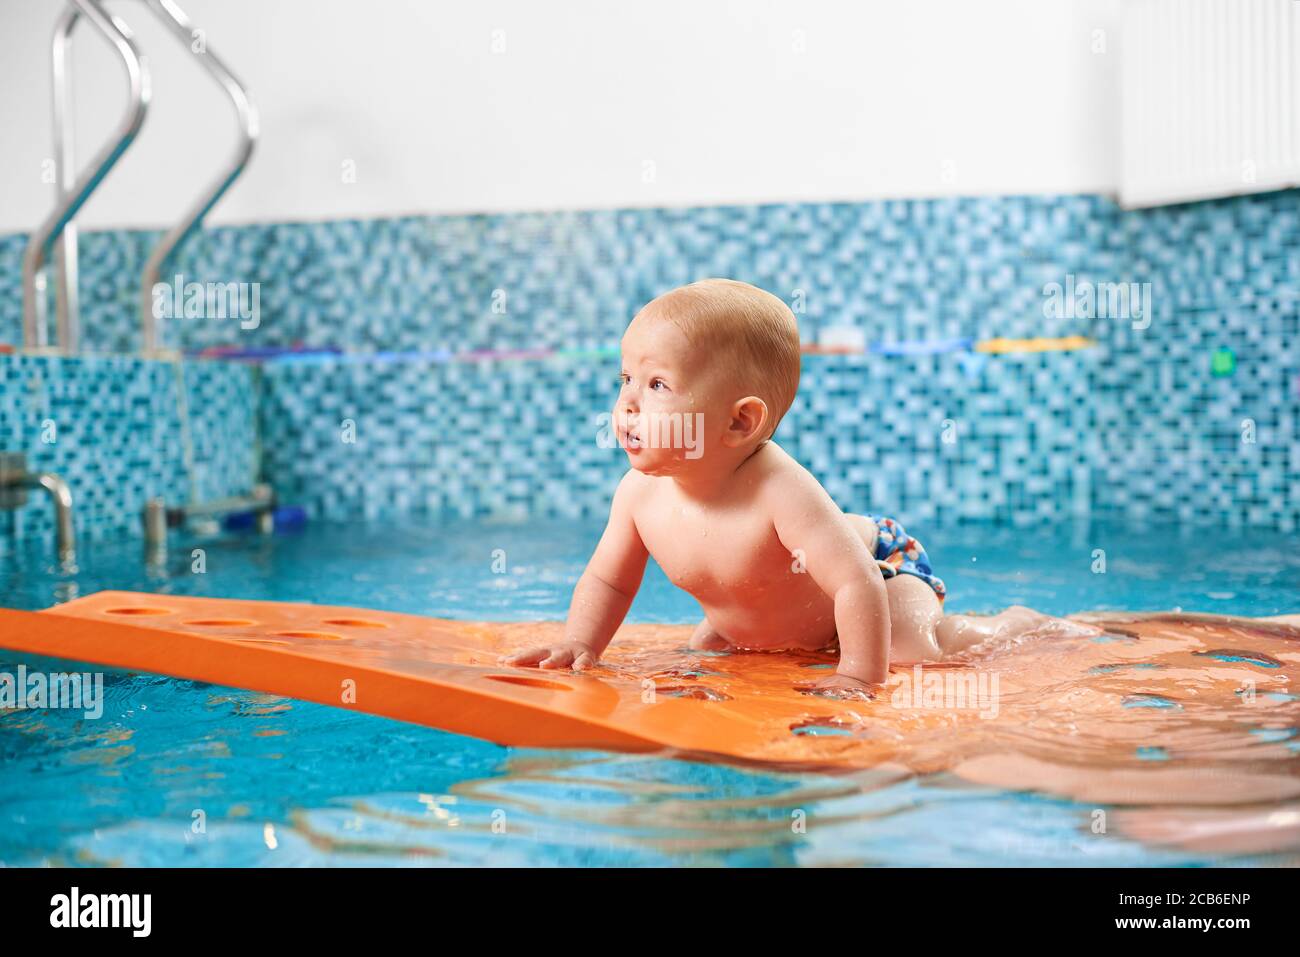 Photo horizontale d'un nageur futur. Très mignon bébé garçon est rampant  sur un tapis flottant dans la piscine essayant de garder l'équilibre.  Concept de bonne enfance Photo Stock - Alamy